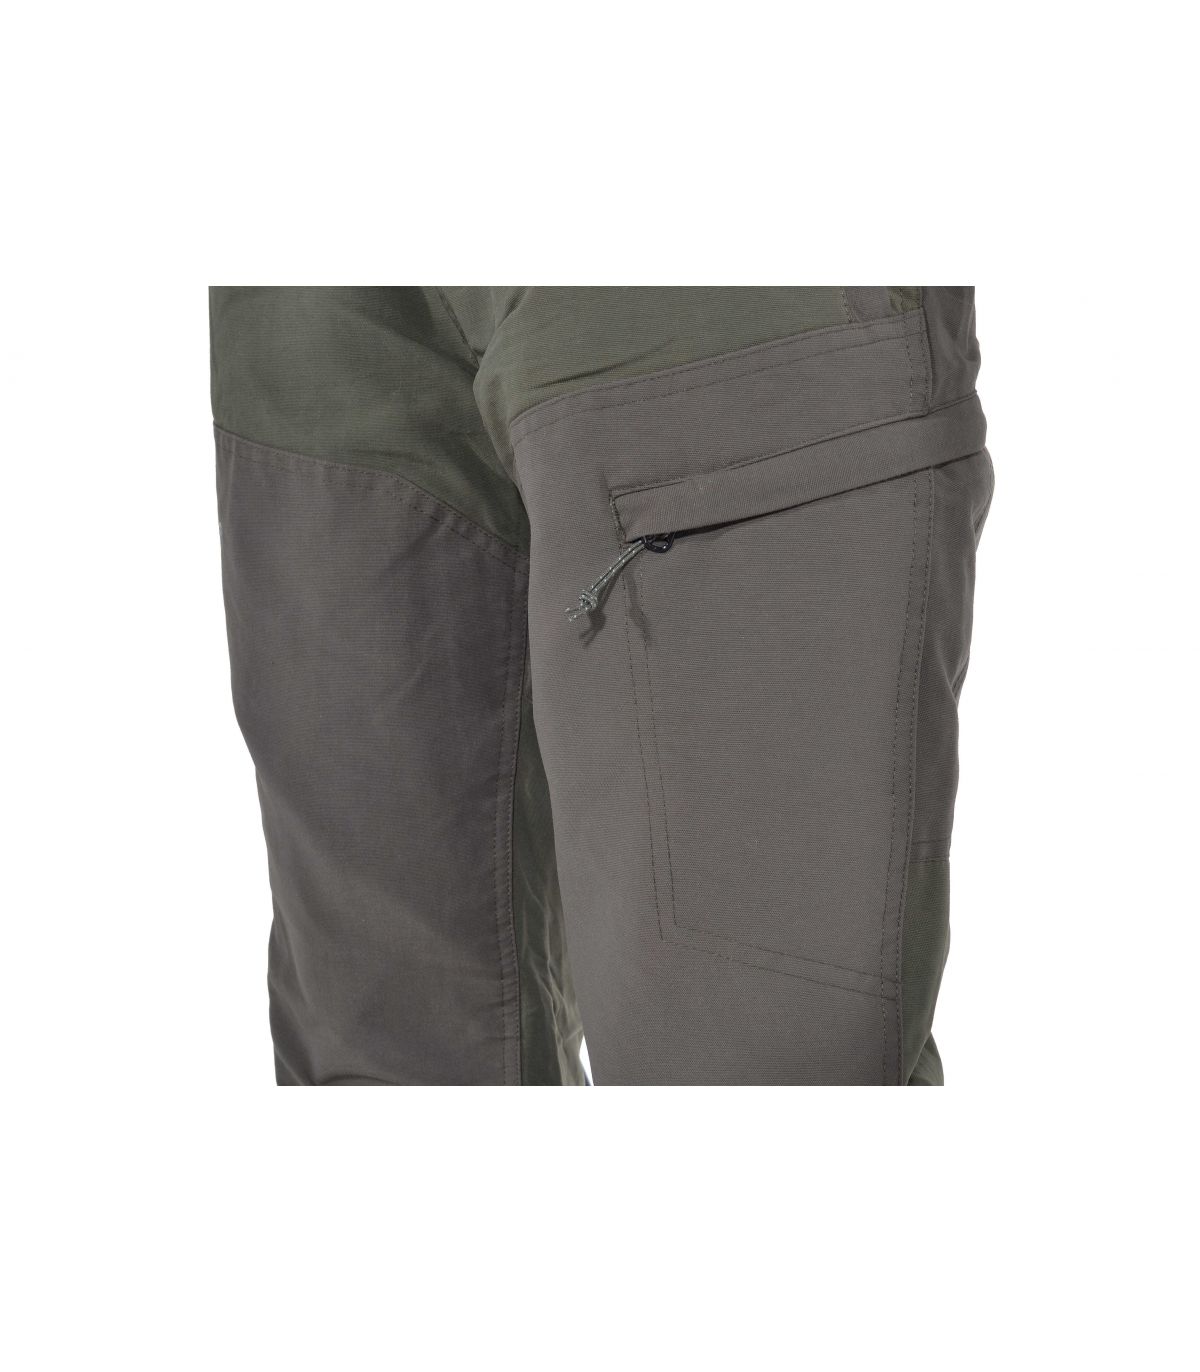 Pantalones de caza verdes cómodos marca Chiruca para hombre, alta resi